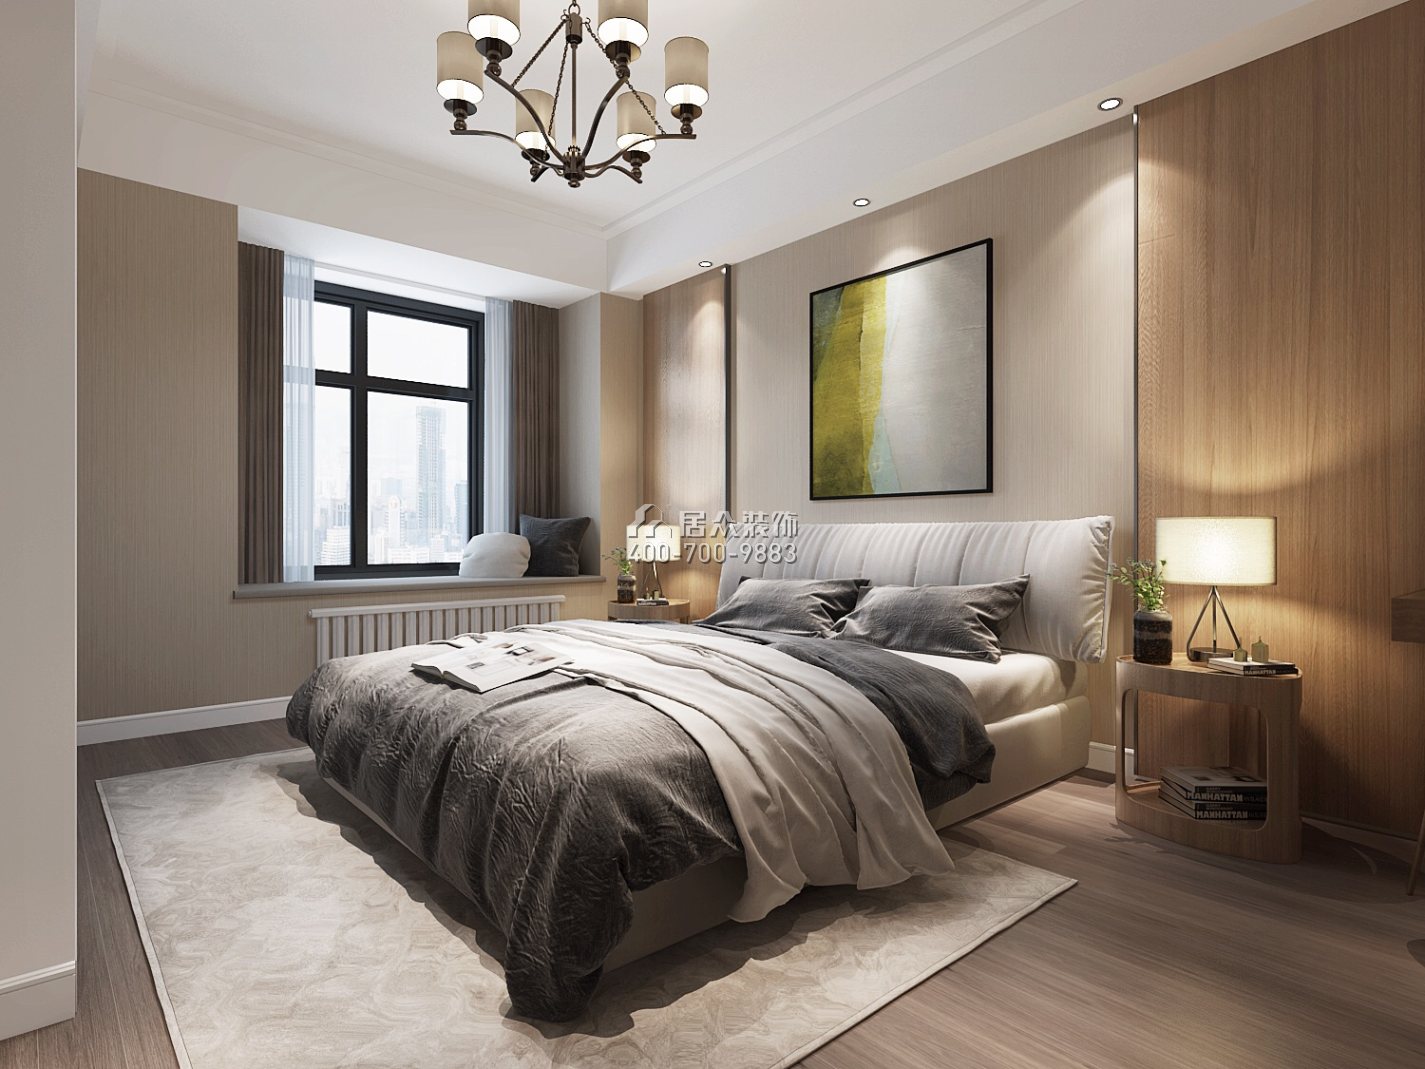 紫御华庭130平方米现代简约风格平层户型卧室装修效果图